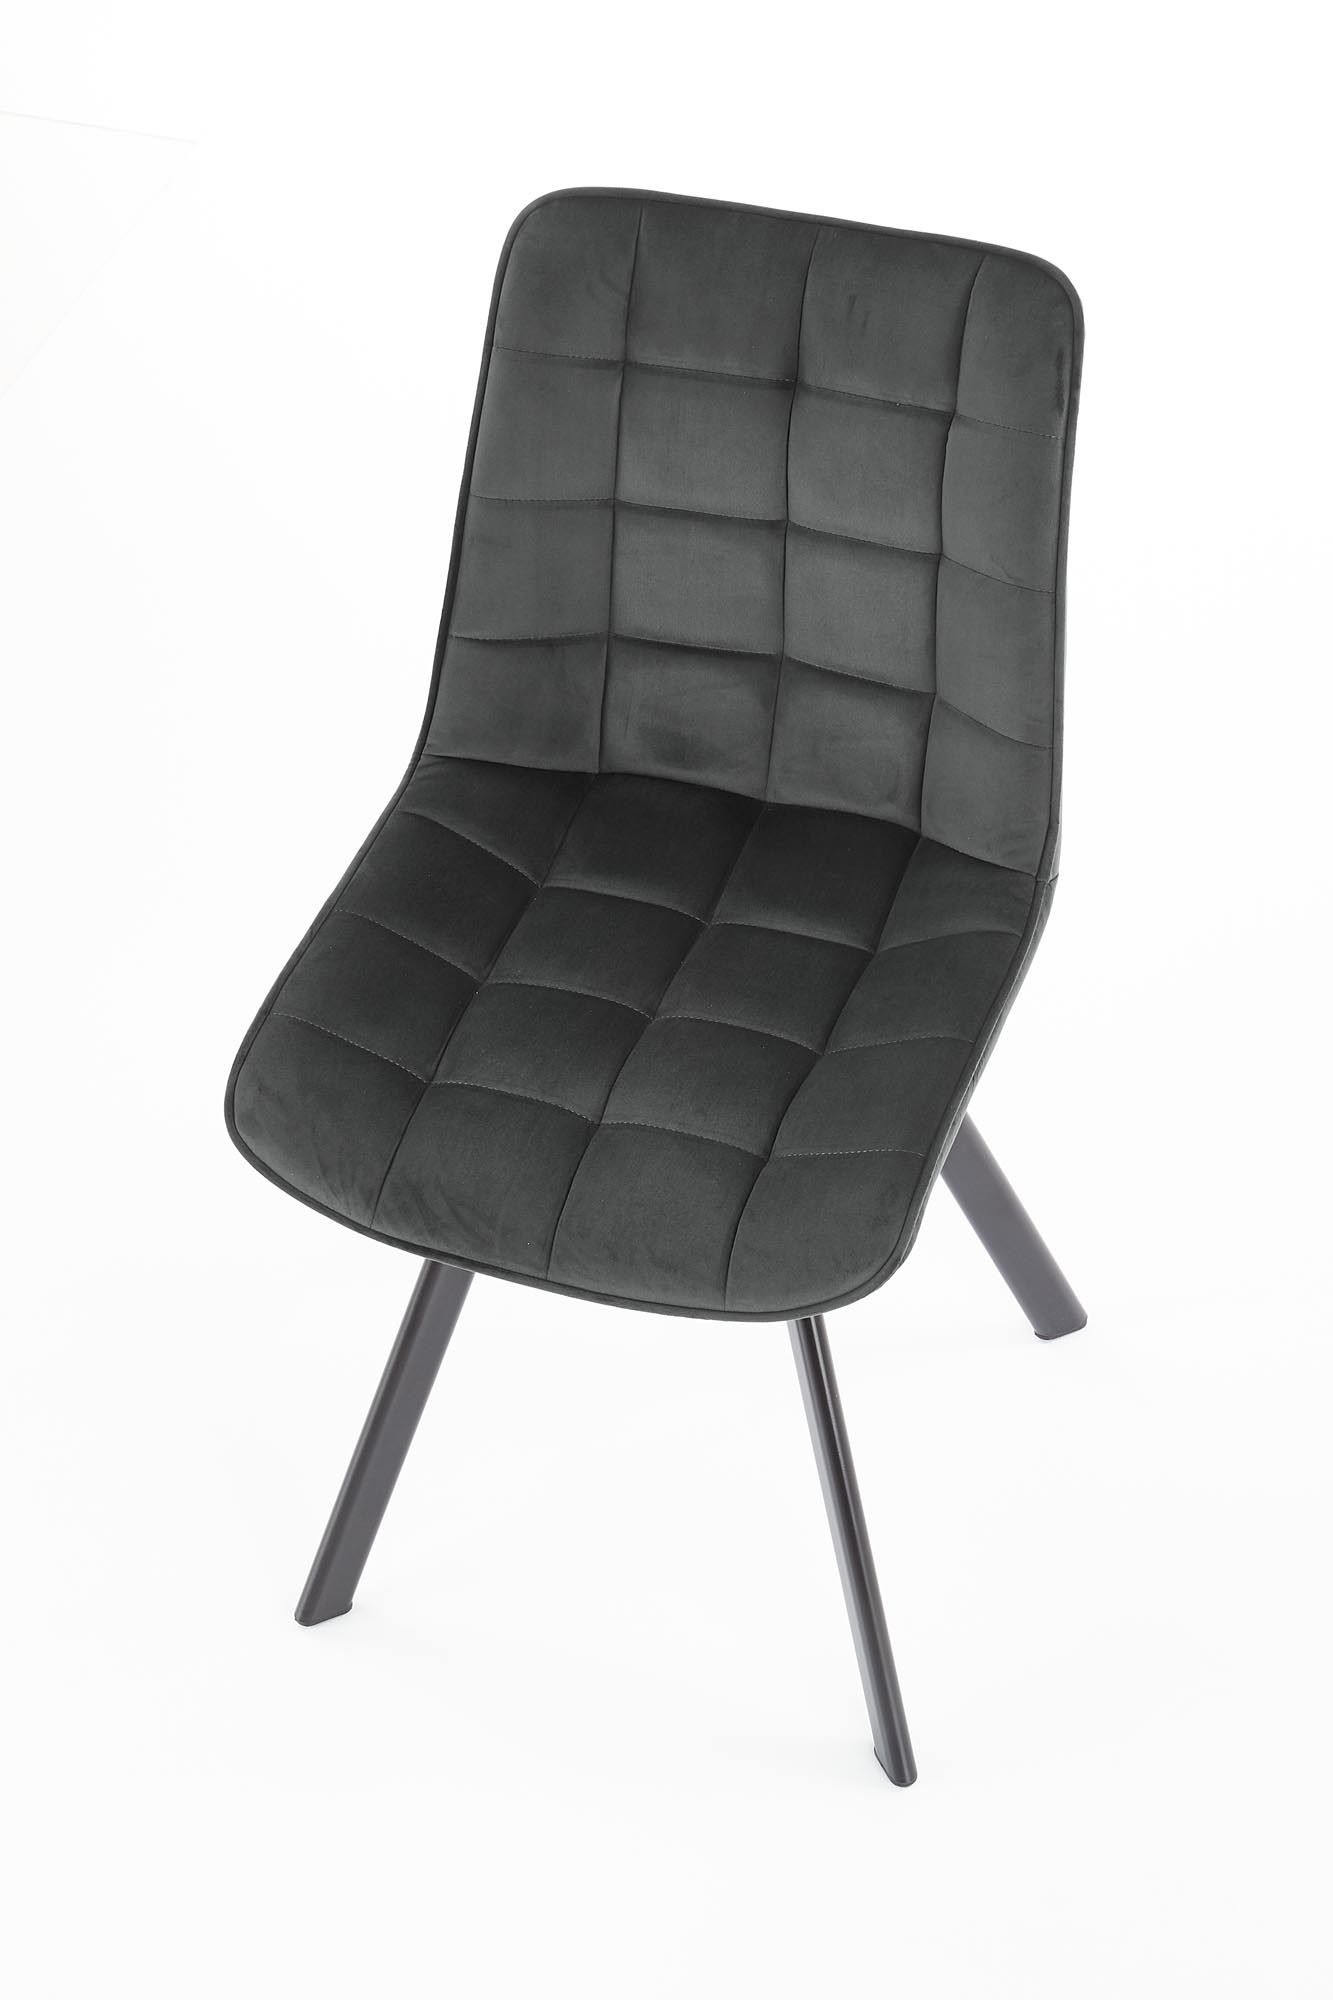 K332 kárpitozott szék - fekete / hamu szürke Židle čalouněné k332 - čierna/tmavý popel